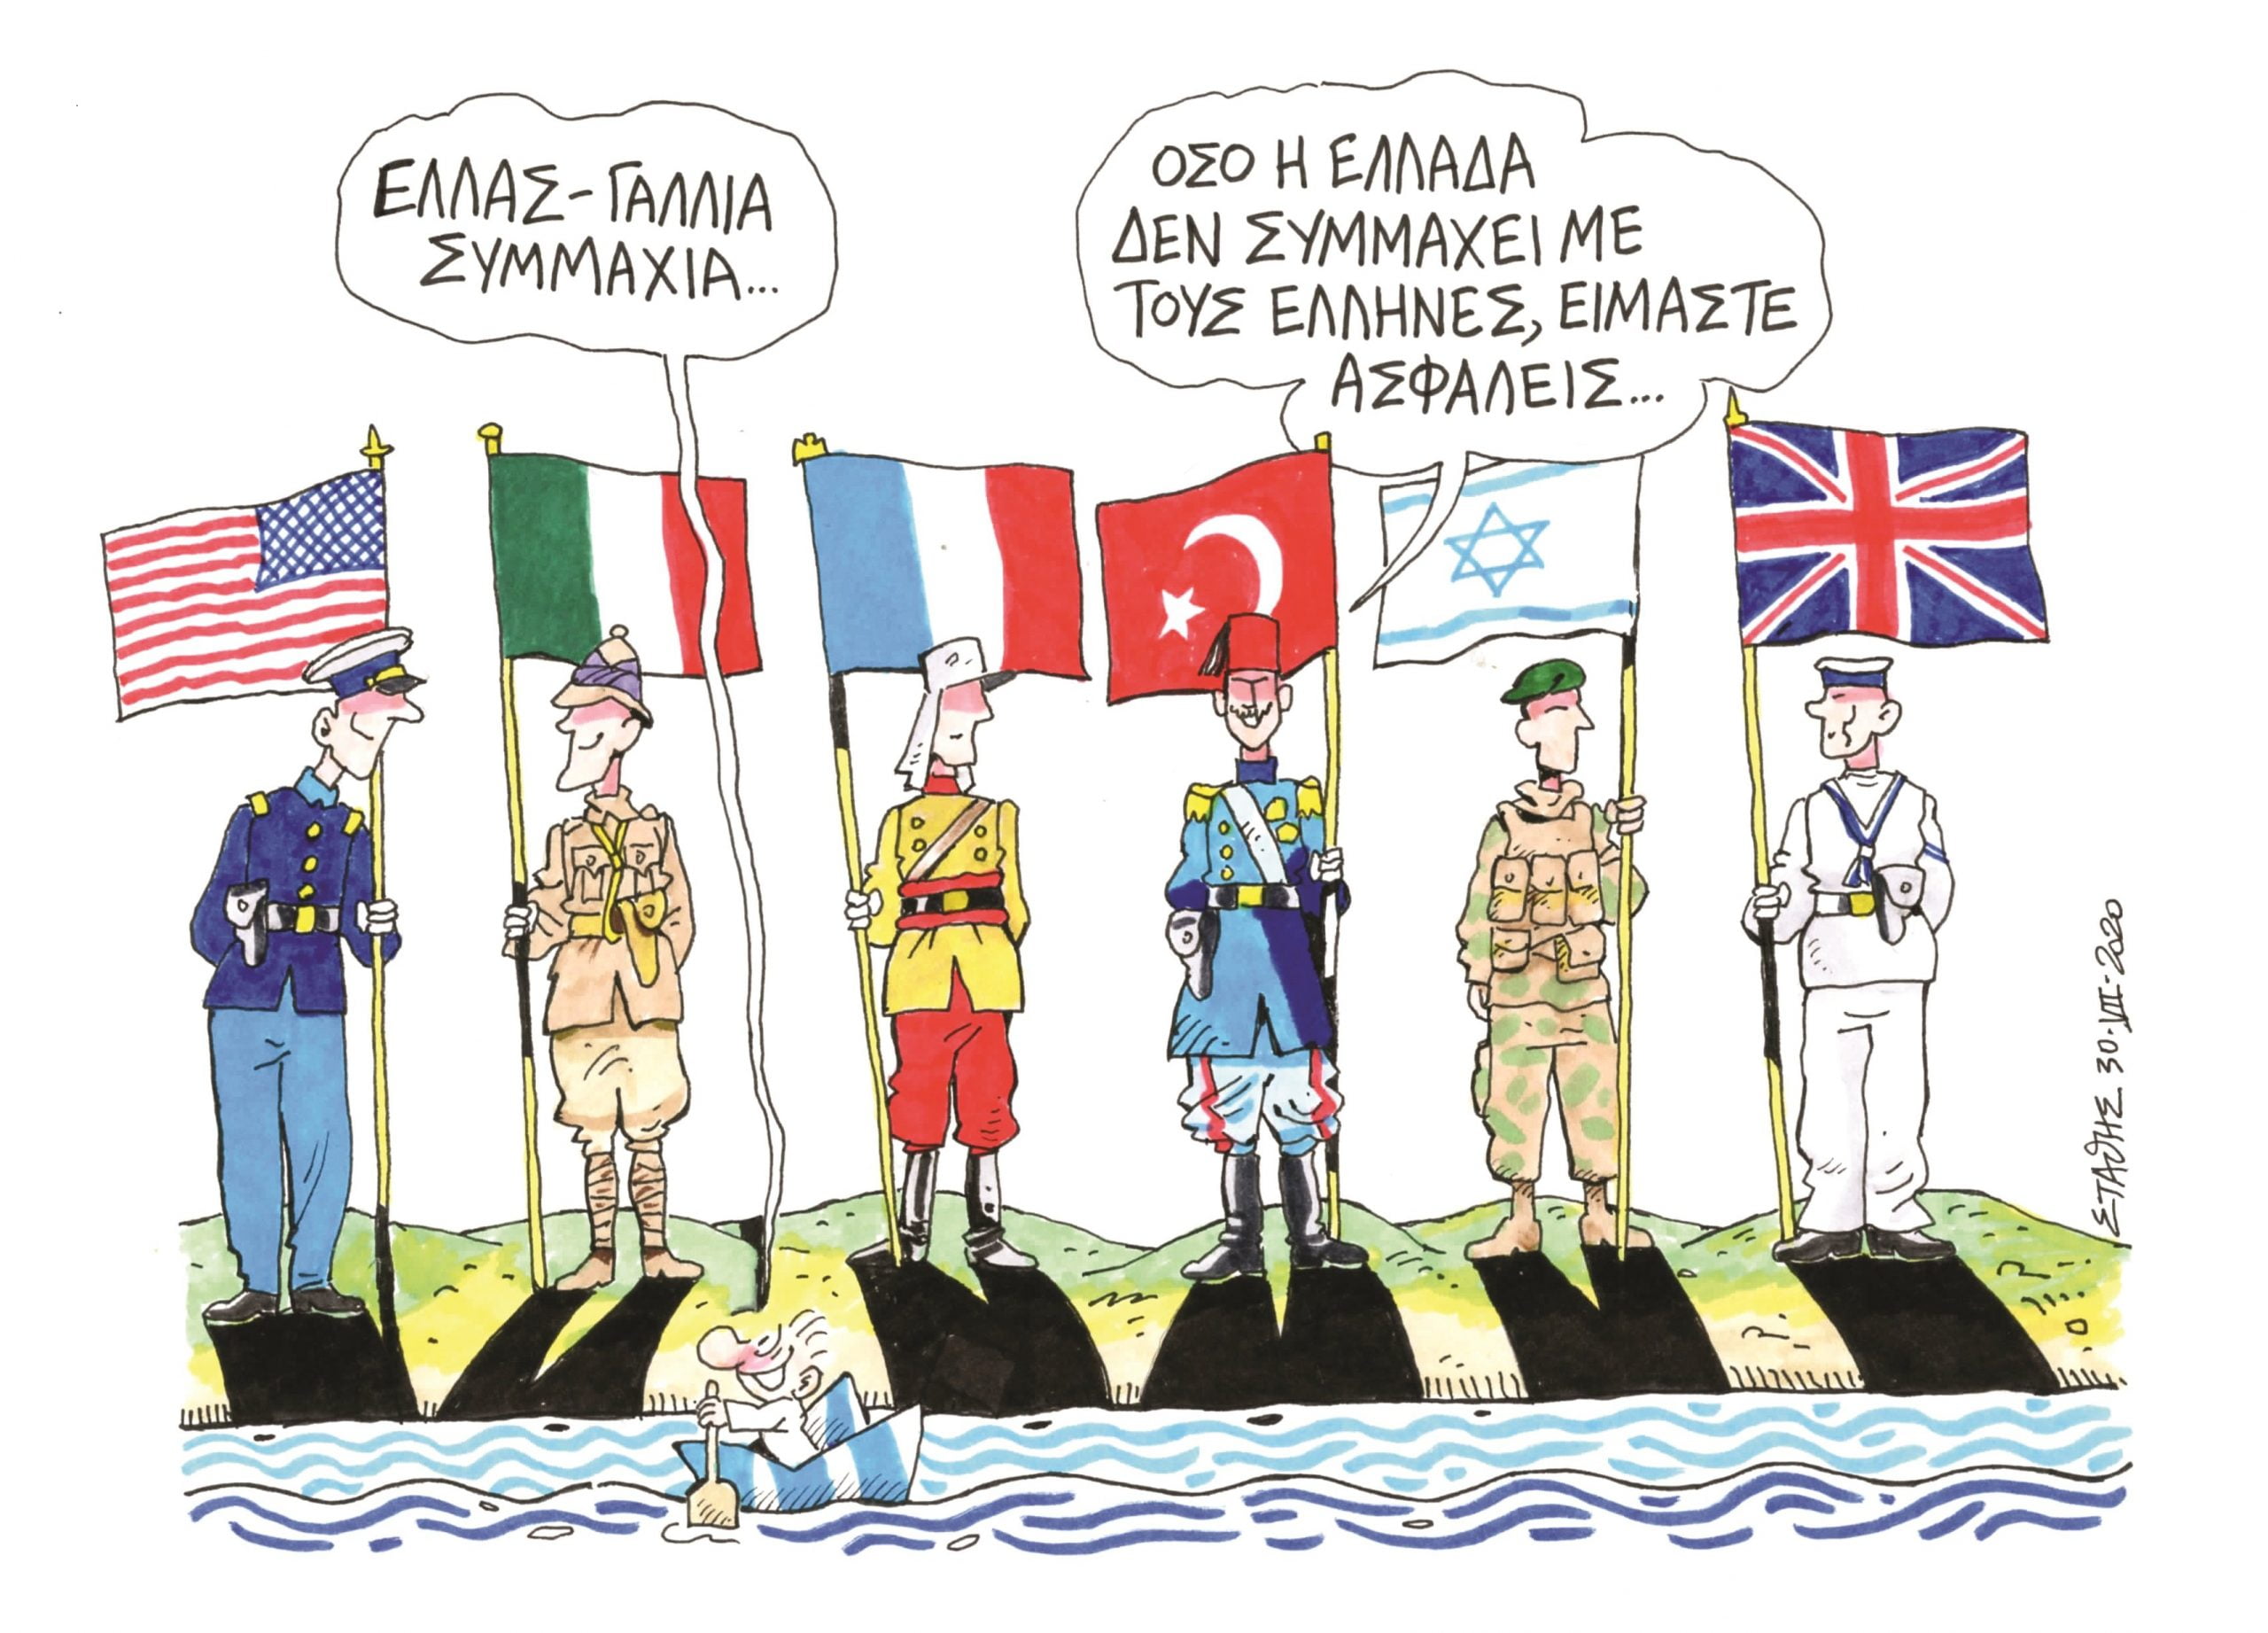 Η Ελλάδα να συμμαχήσει με τους Έλληνες – Εύγλωττο σκίτσο του Στάθη